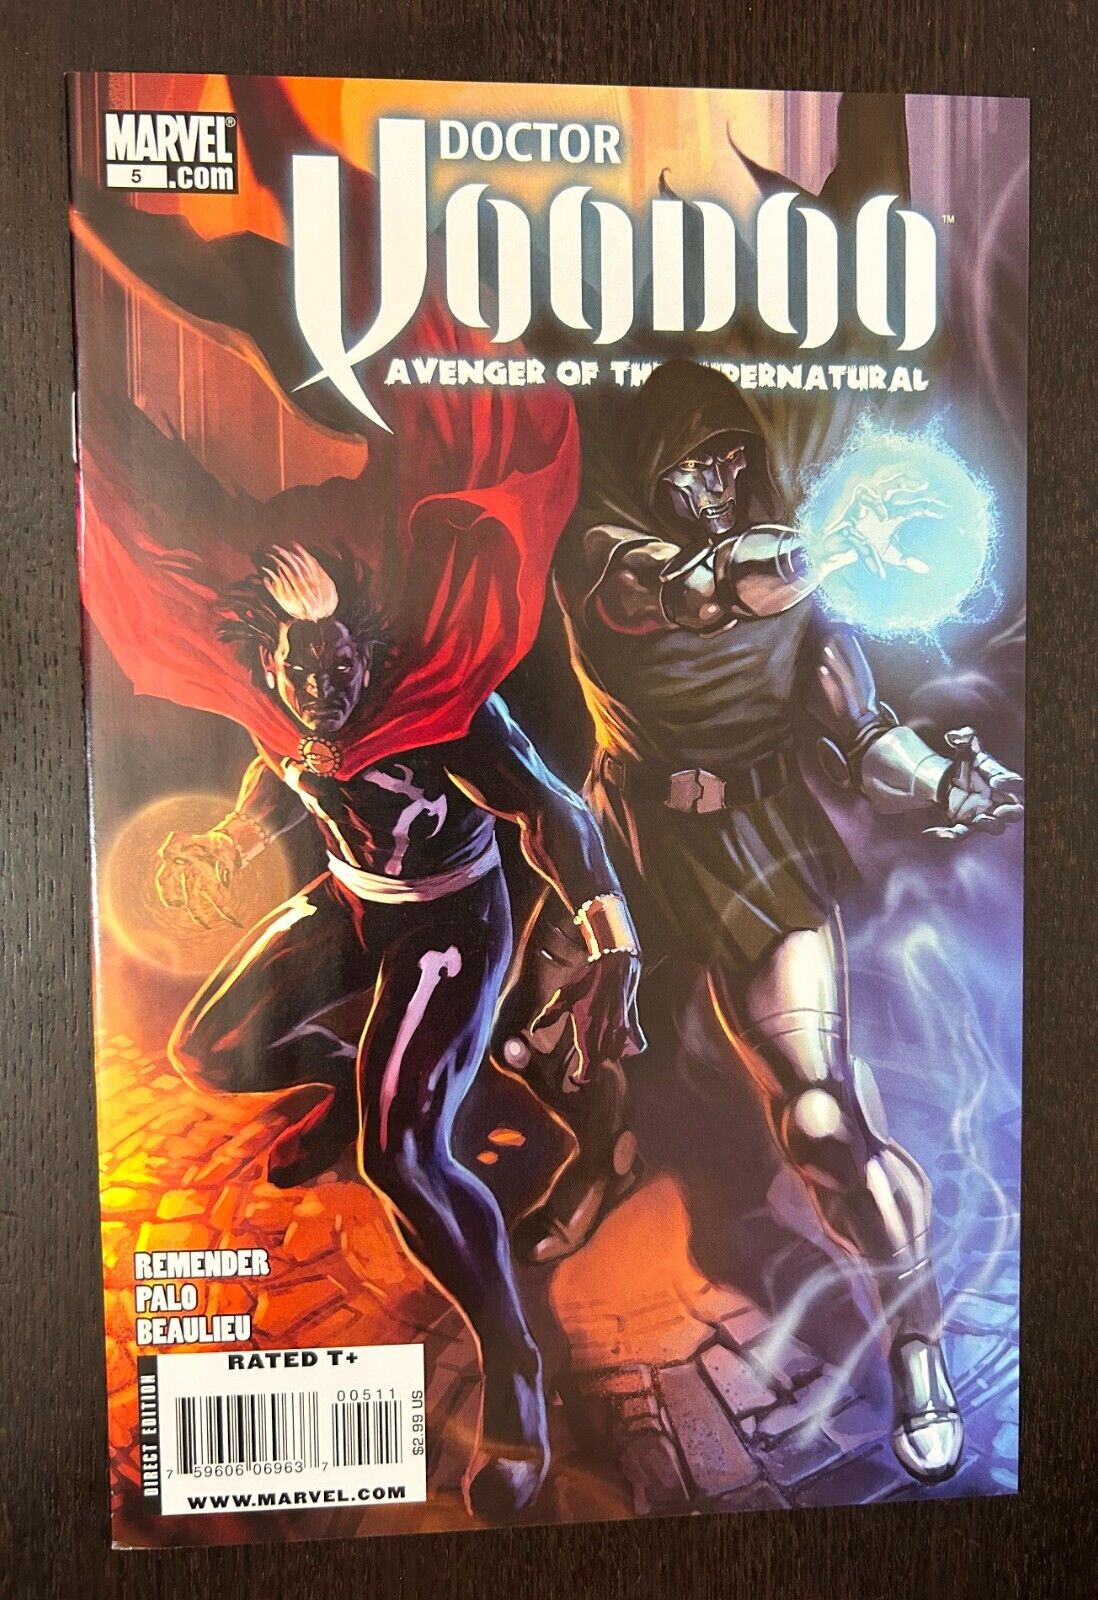 DOCTOR VOODOO #5 (Marvel Comics 2010) -- NM-